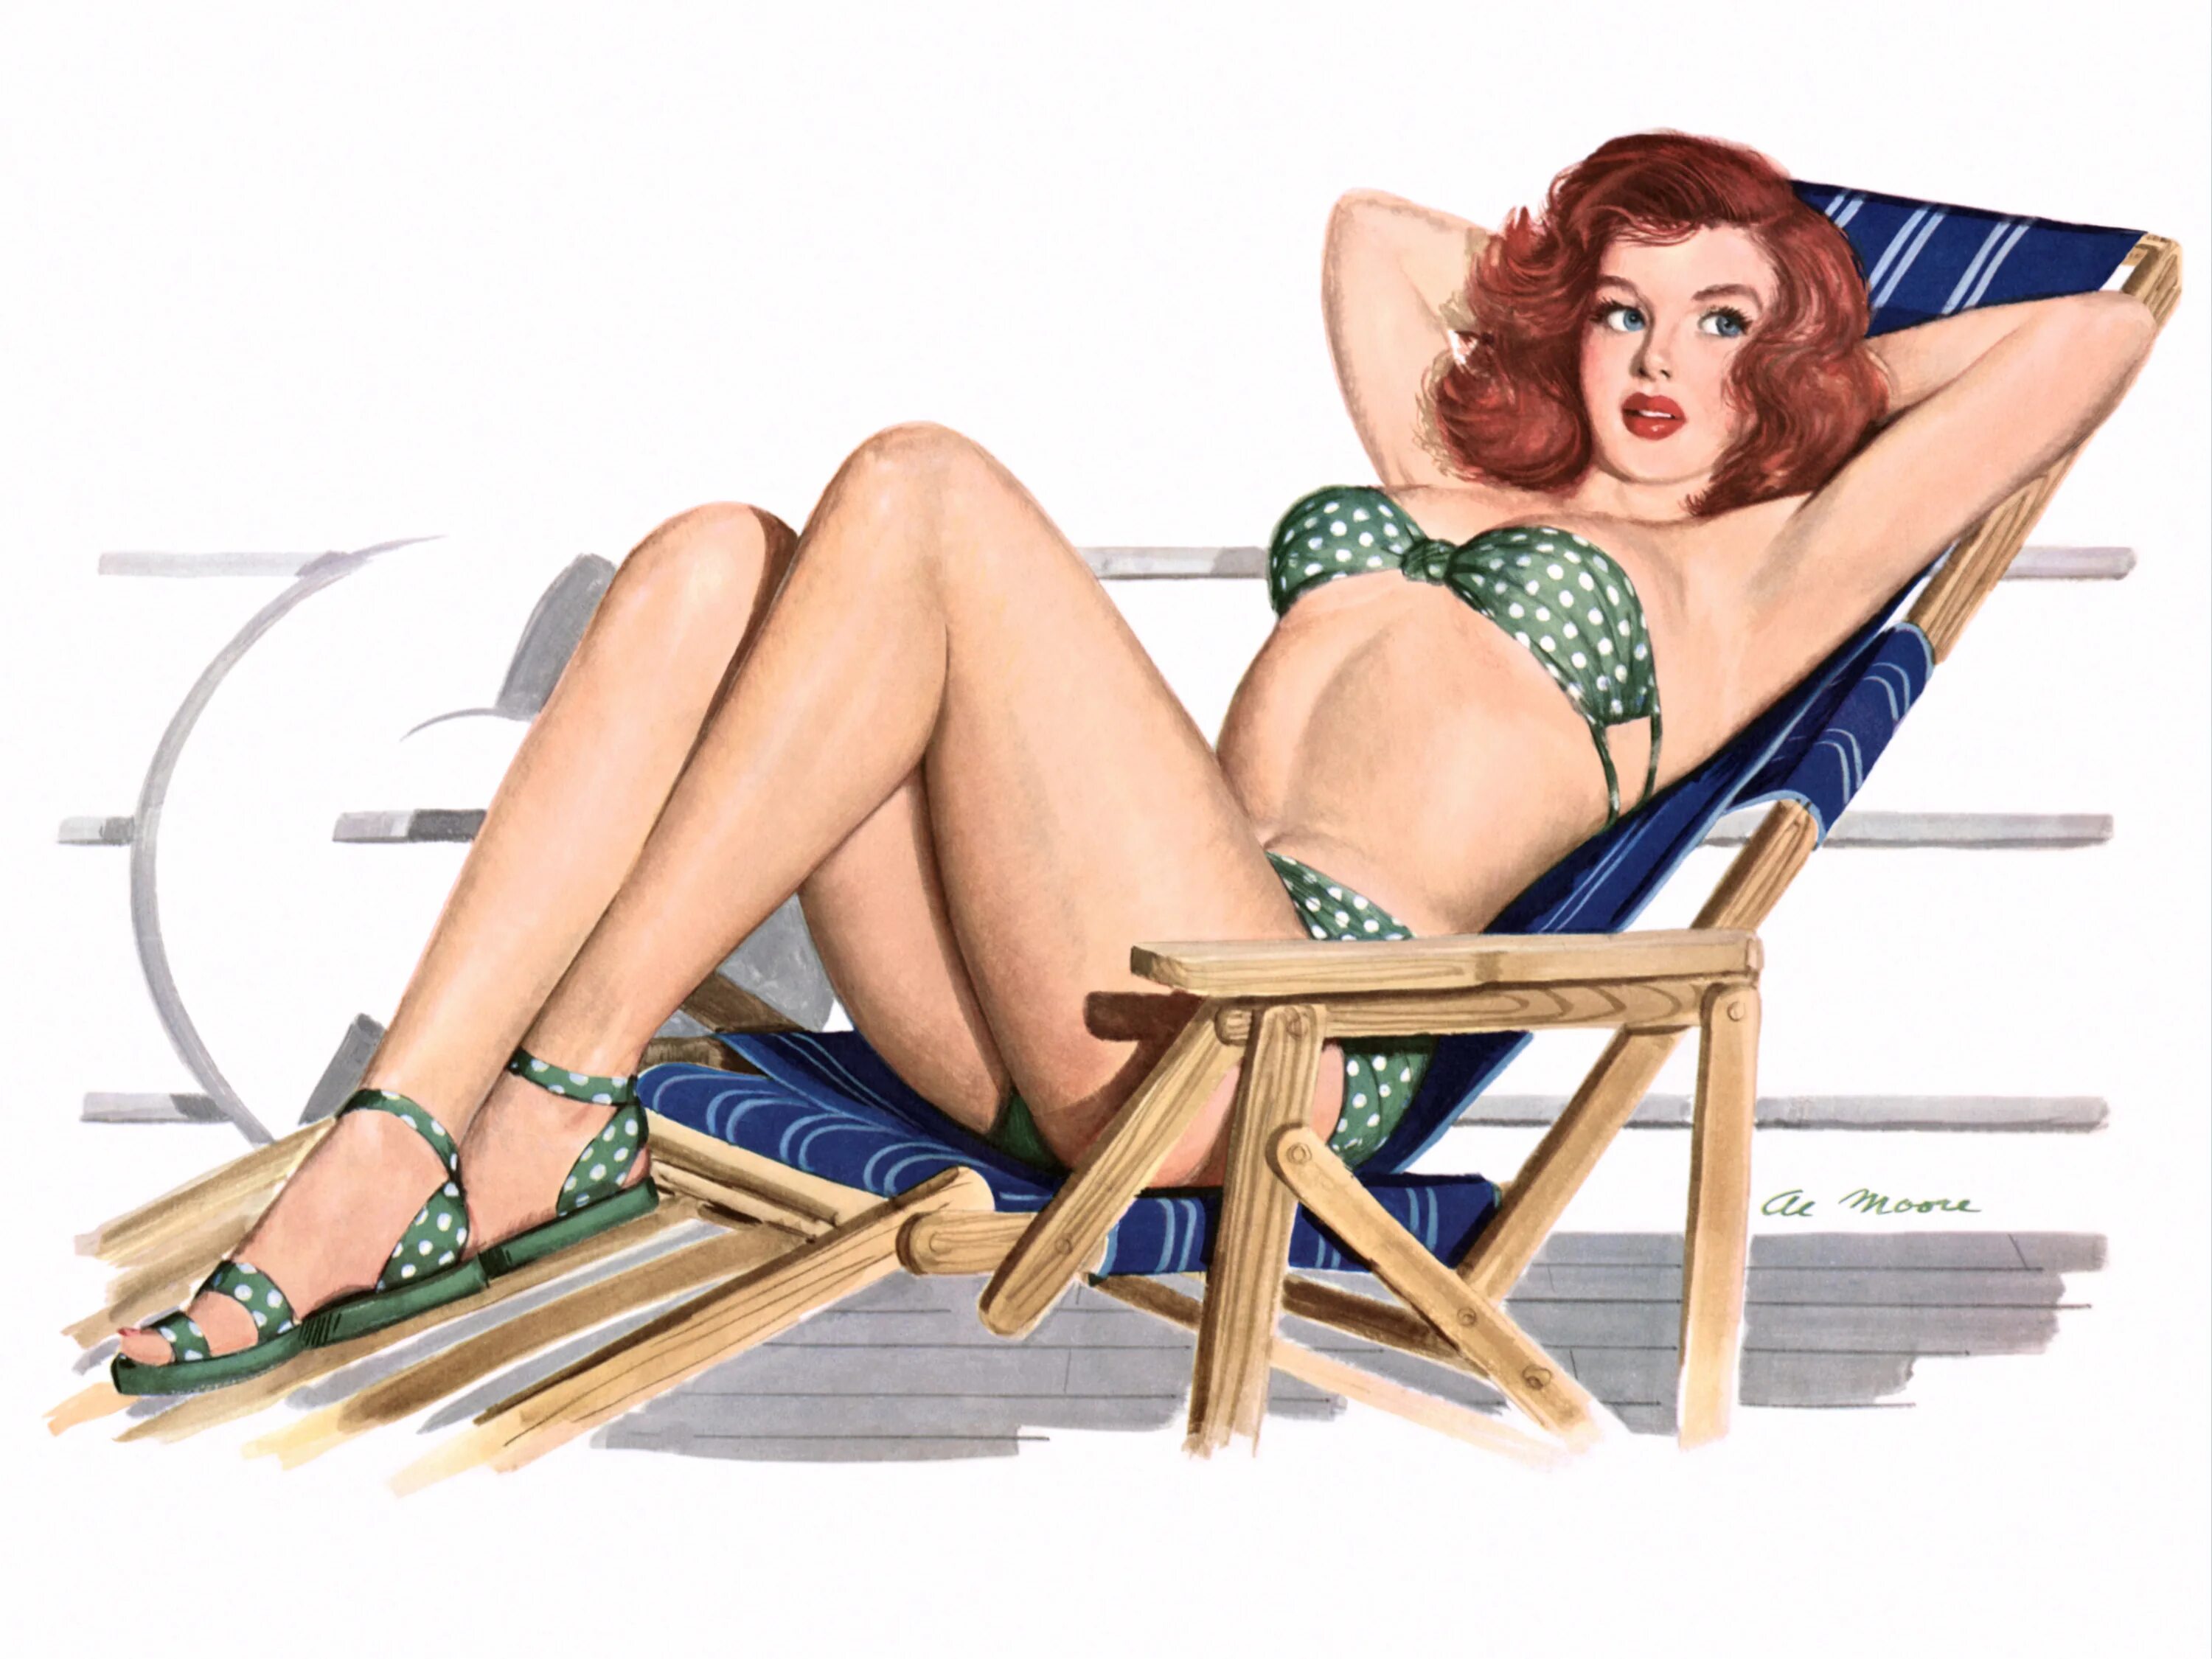 Рисунки в стиле пин ап. Постеры в стиле 50-х годов. Американские плакаты с девушками. Пин ап девушки. Пин ап бк pin up site